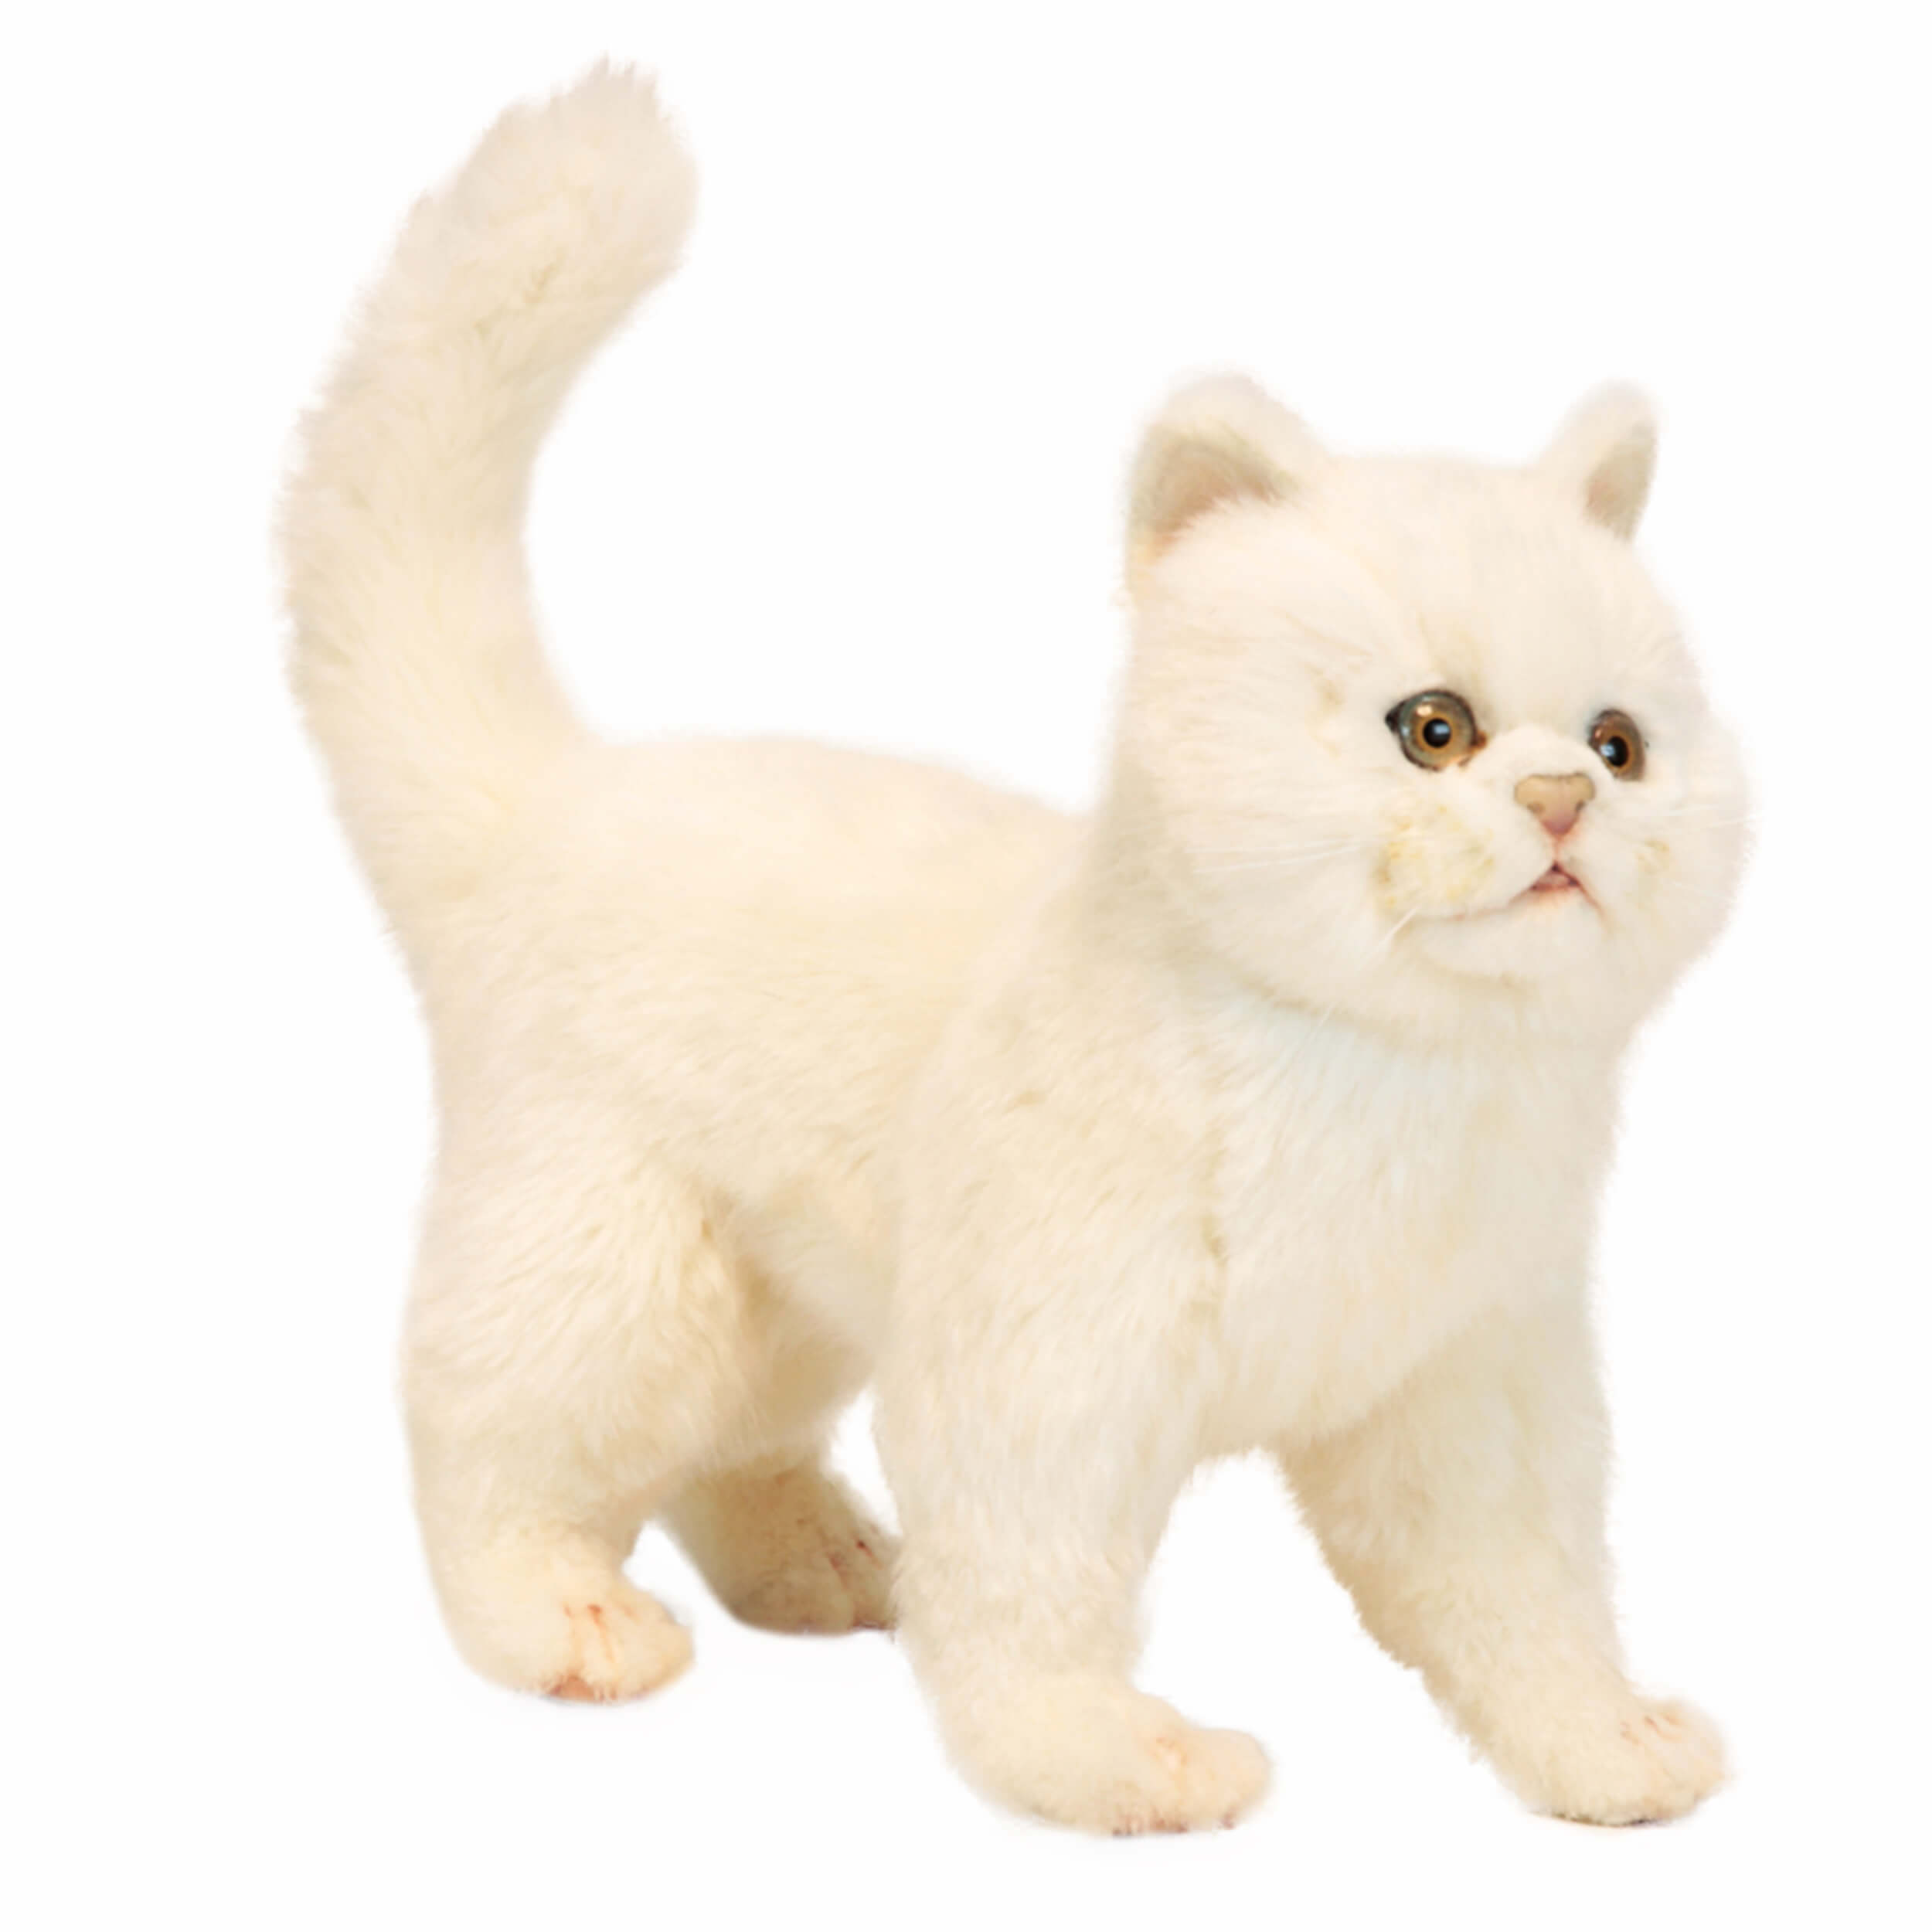 Купить кошку в калининграде. Игрушка кошка Ханса Ханса. Ханса игрушки кот белый. Реалистичная игрушка котенок Hansa. Мягкие игрушки Hansa котенок.